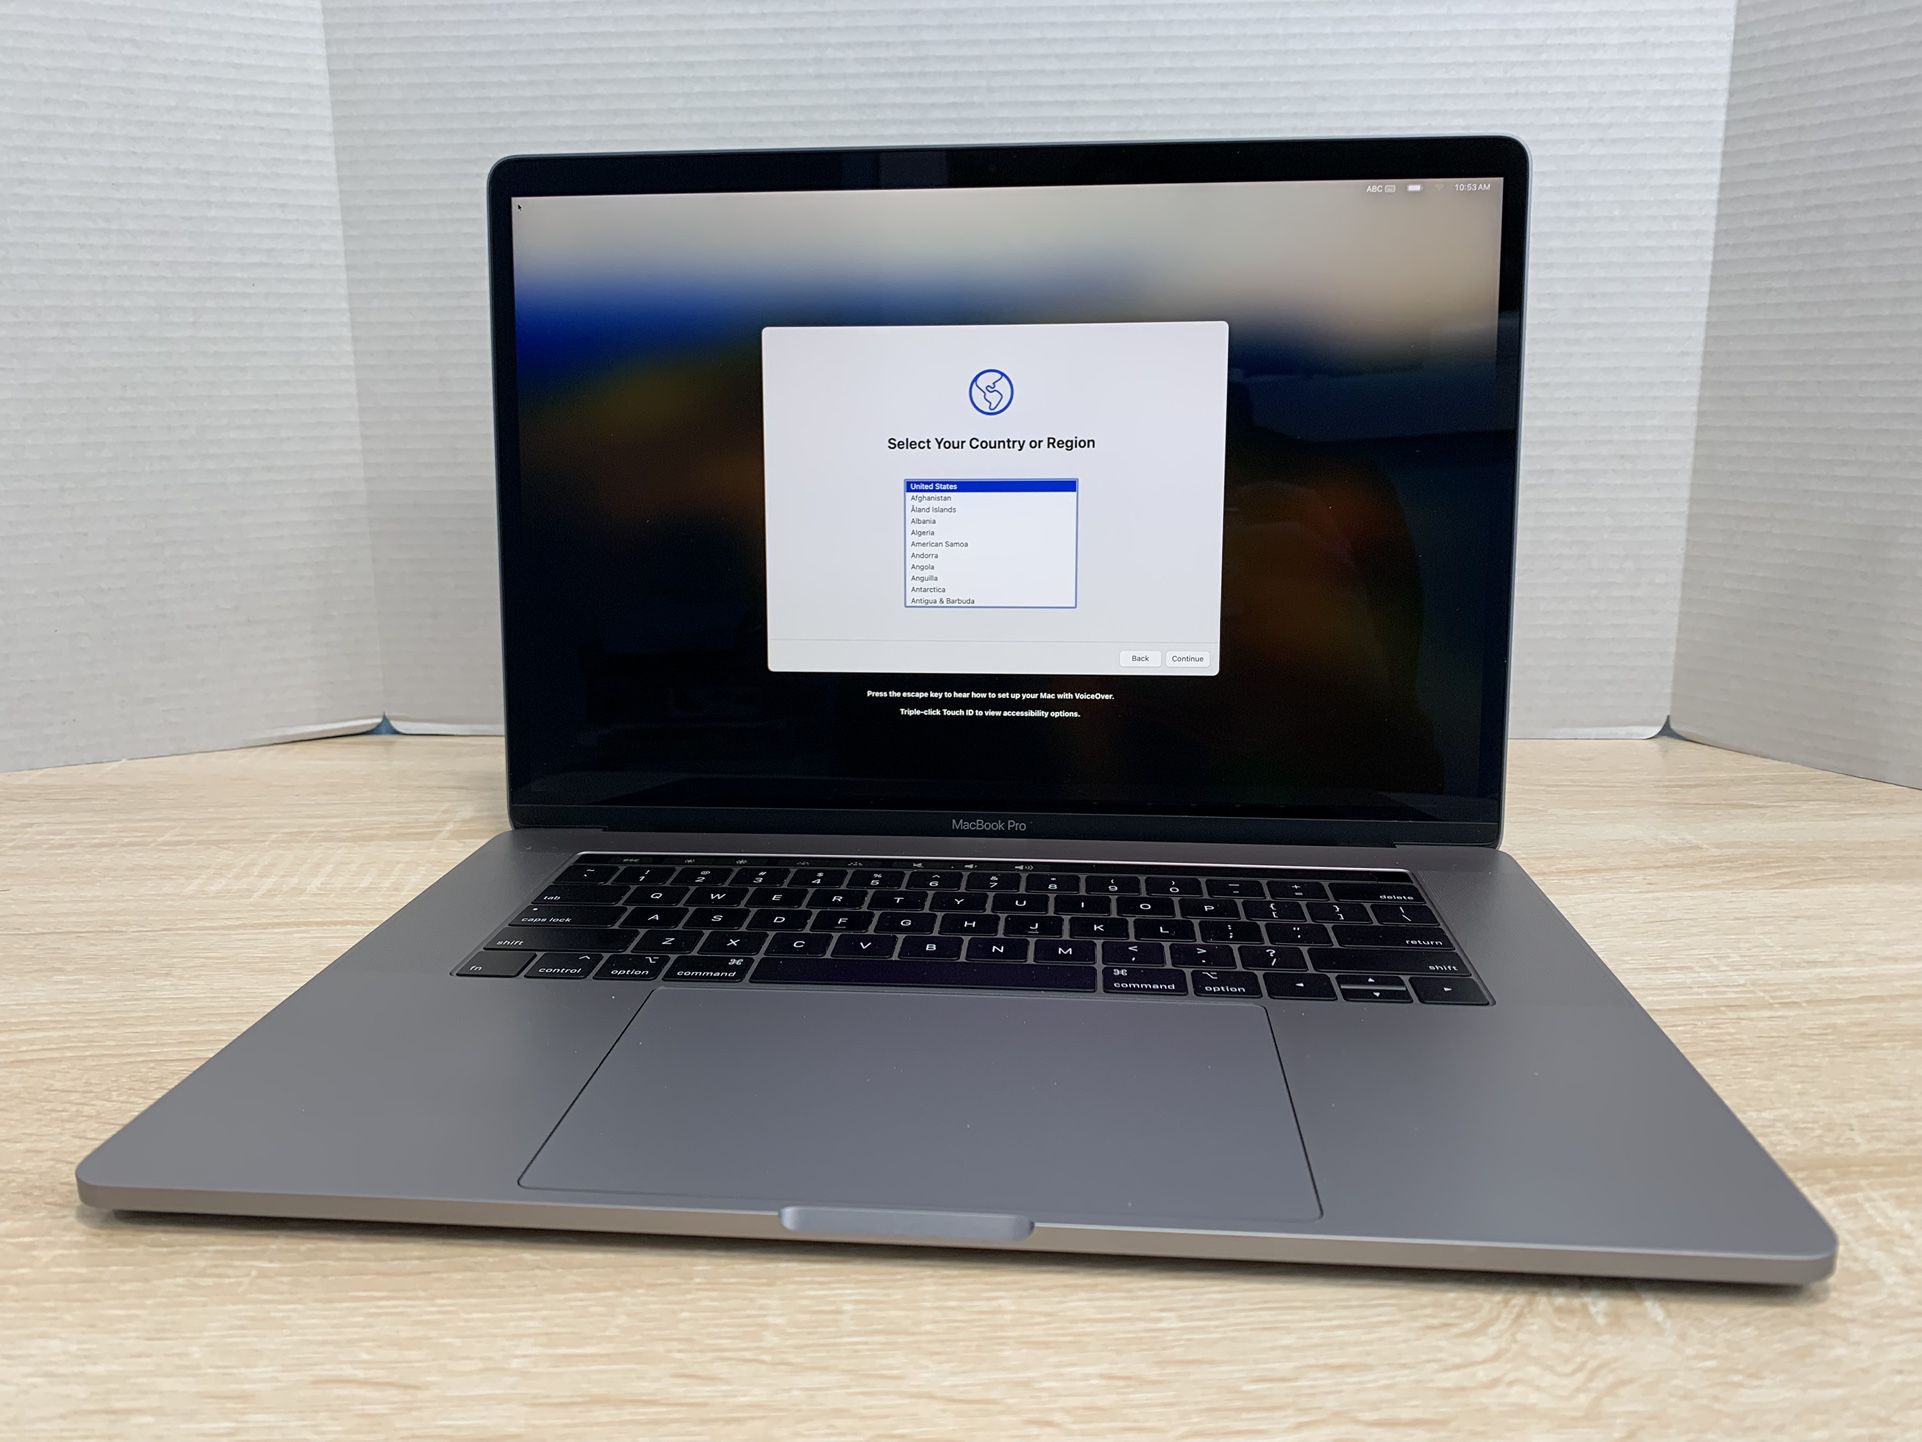 $450 (FIRM), 32GB RAM, 2018 MacBook Pro 15"